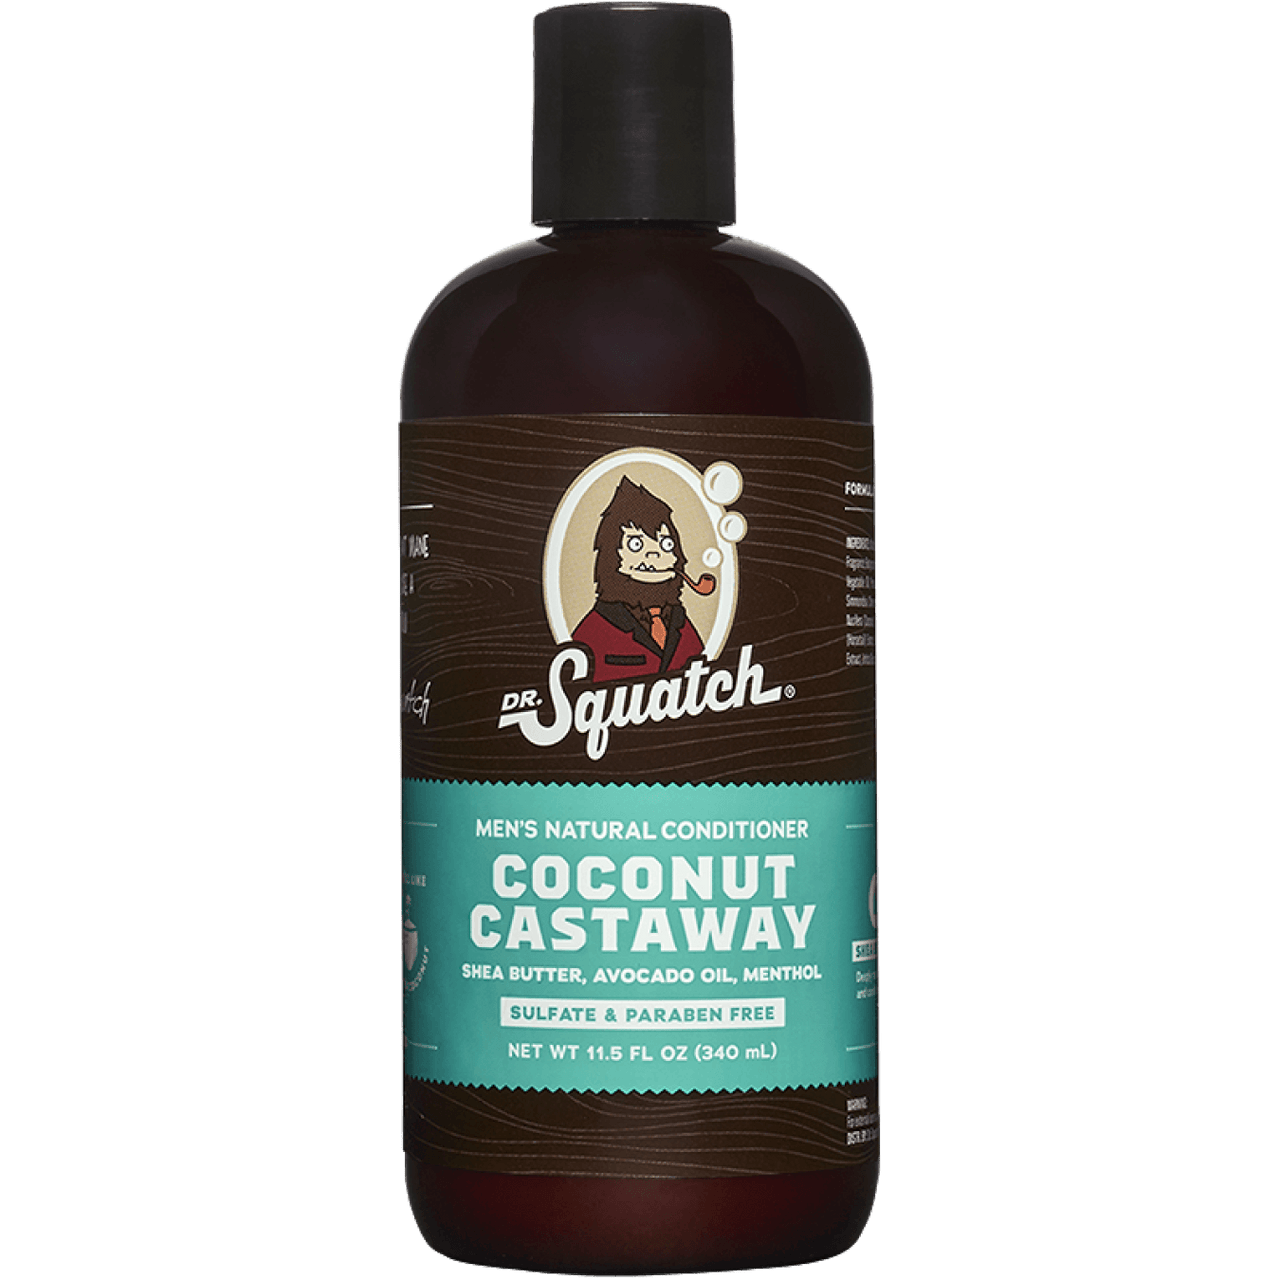 Coconut Castaway Conditioner